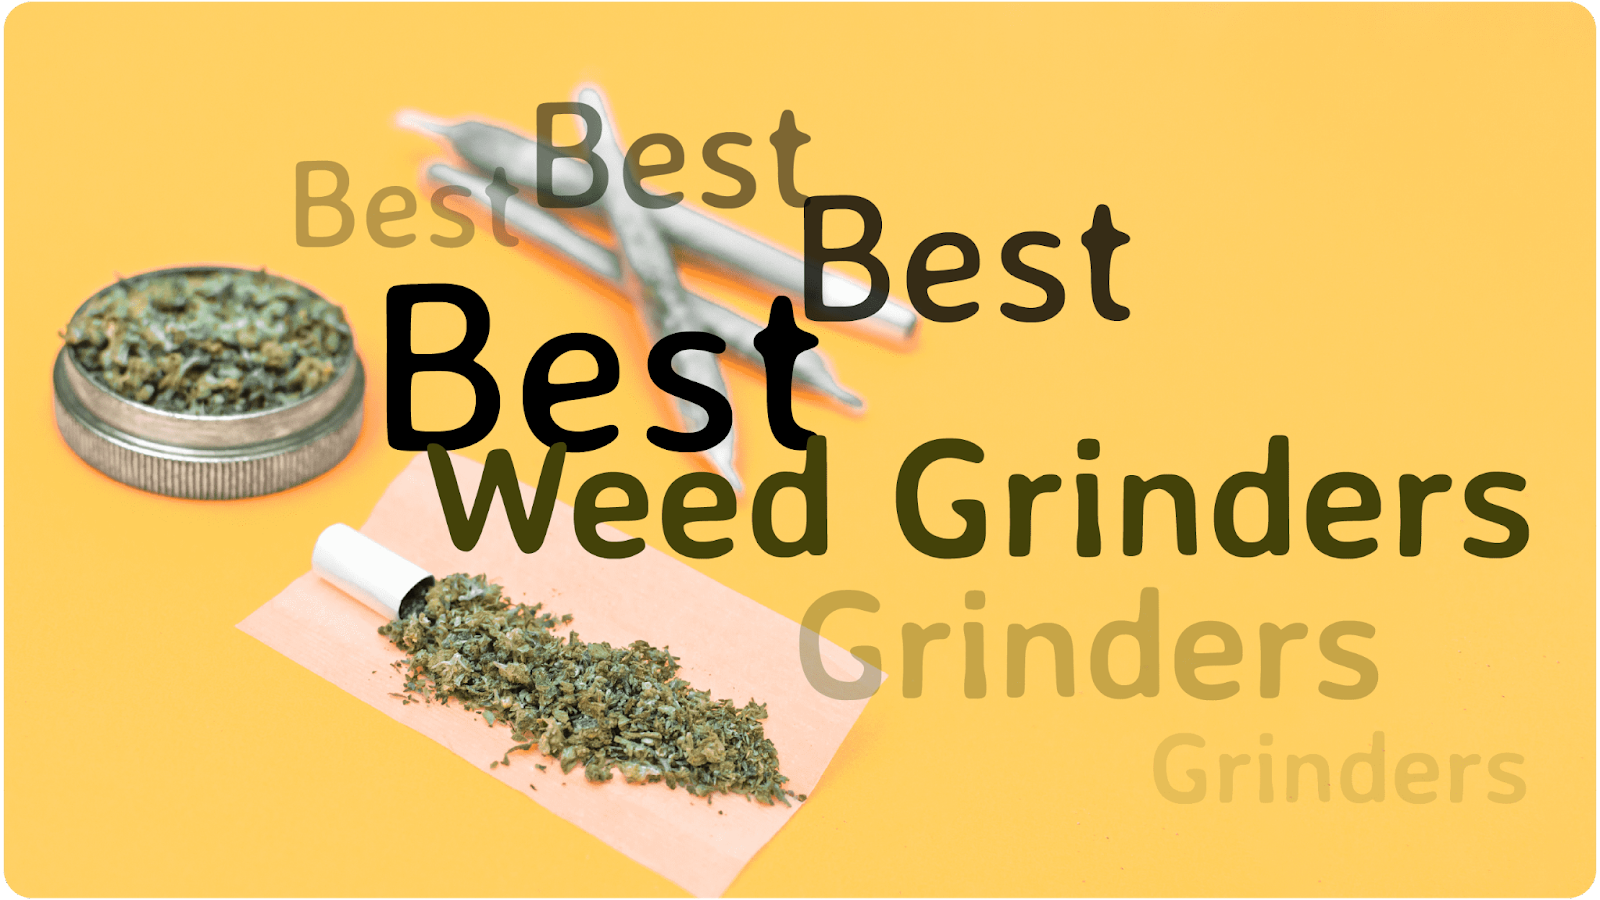 Grinders  Impact 100% Stainless Steel Weed Grinder